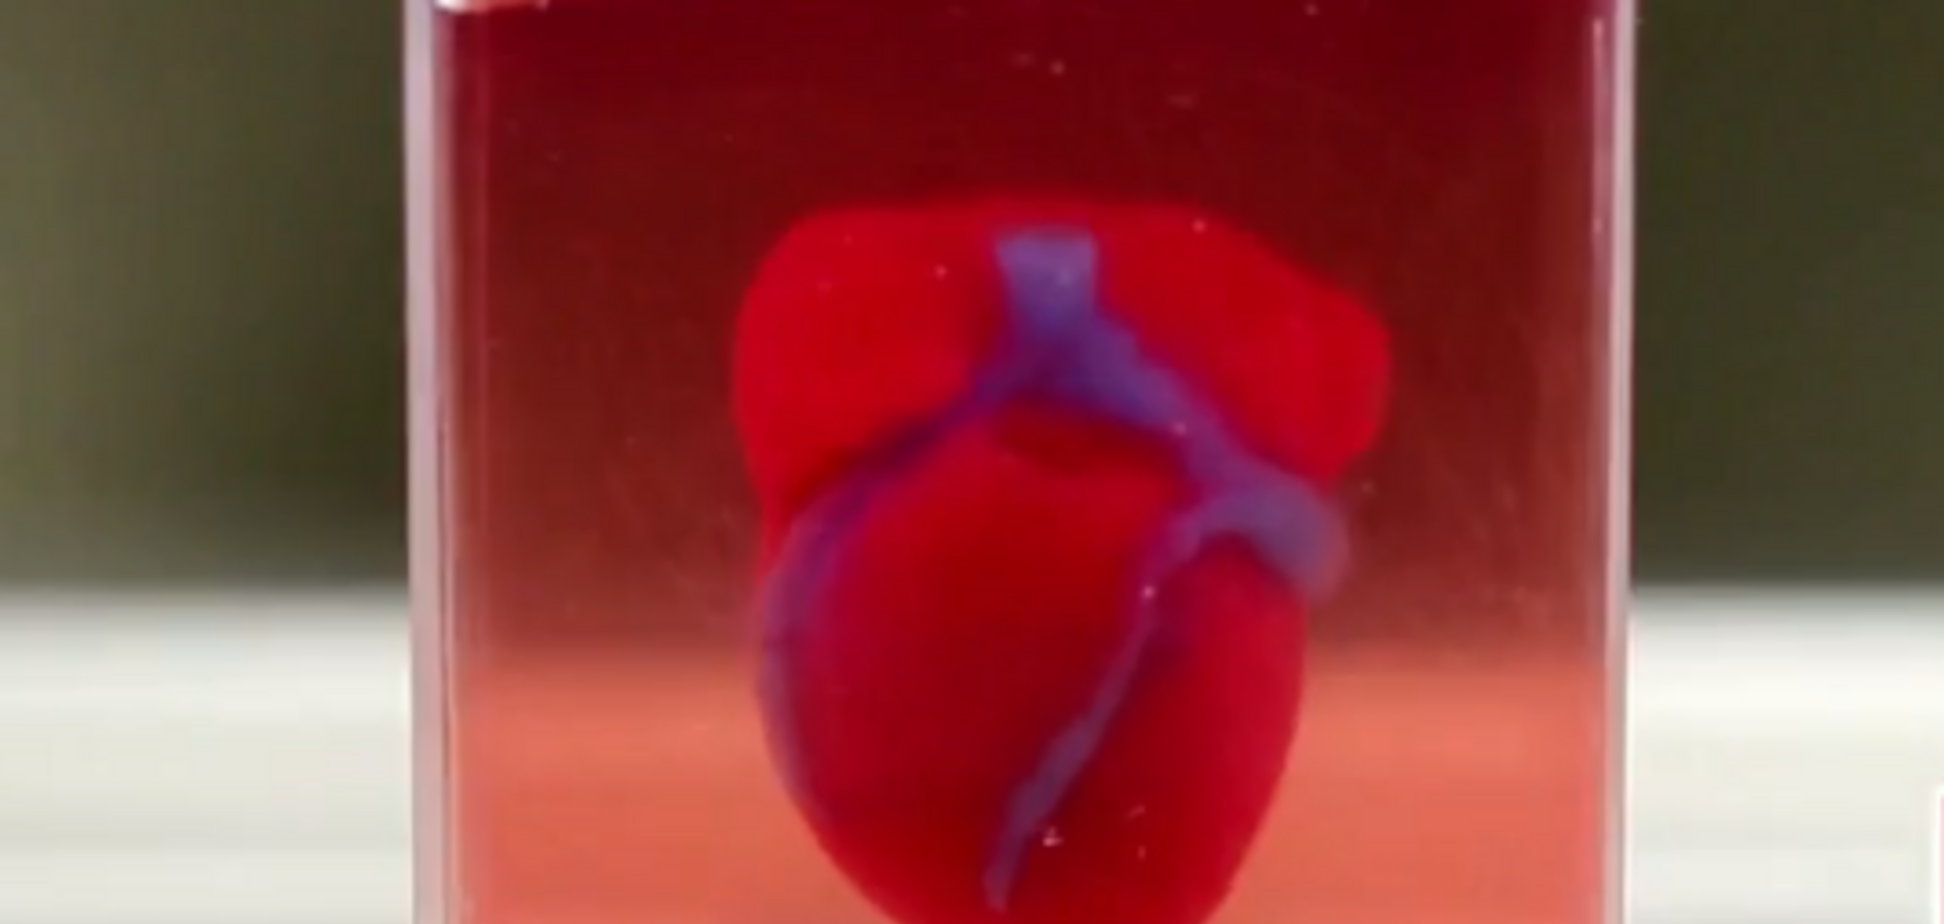   Ученые впервые напечатали живое сердце на 3D-принтере. Реальное видео